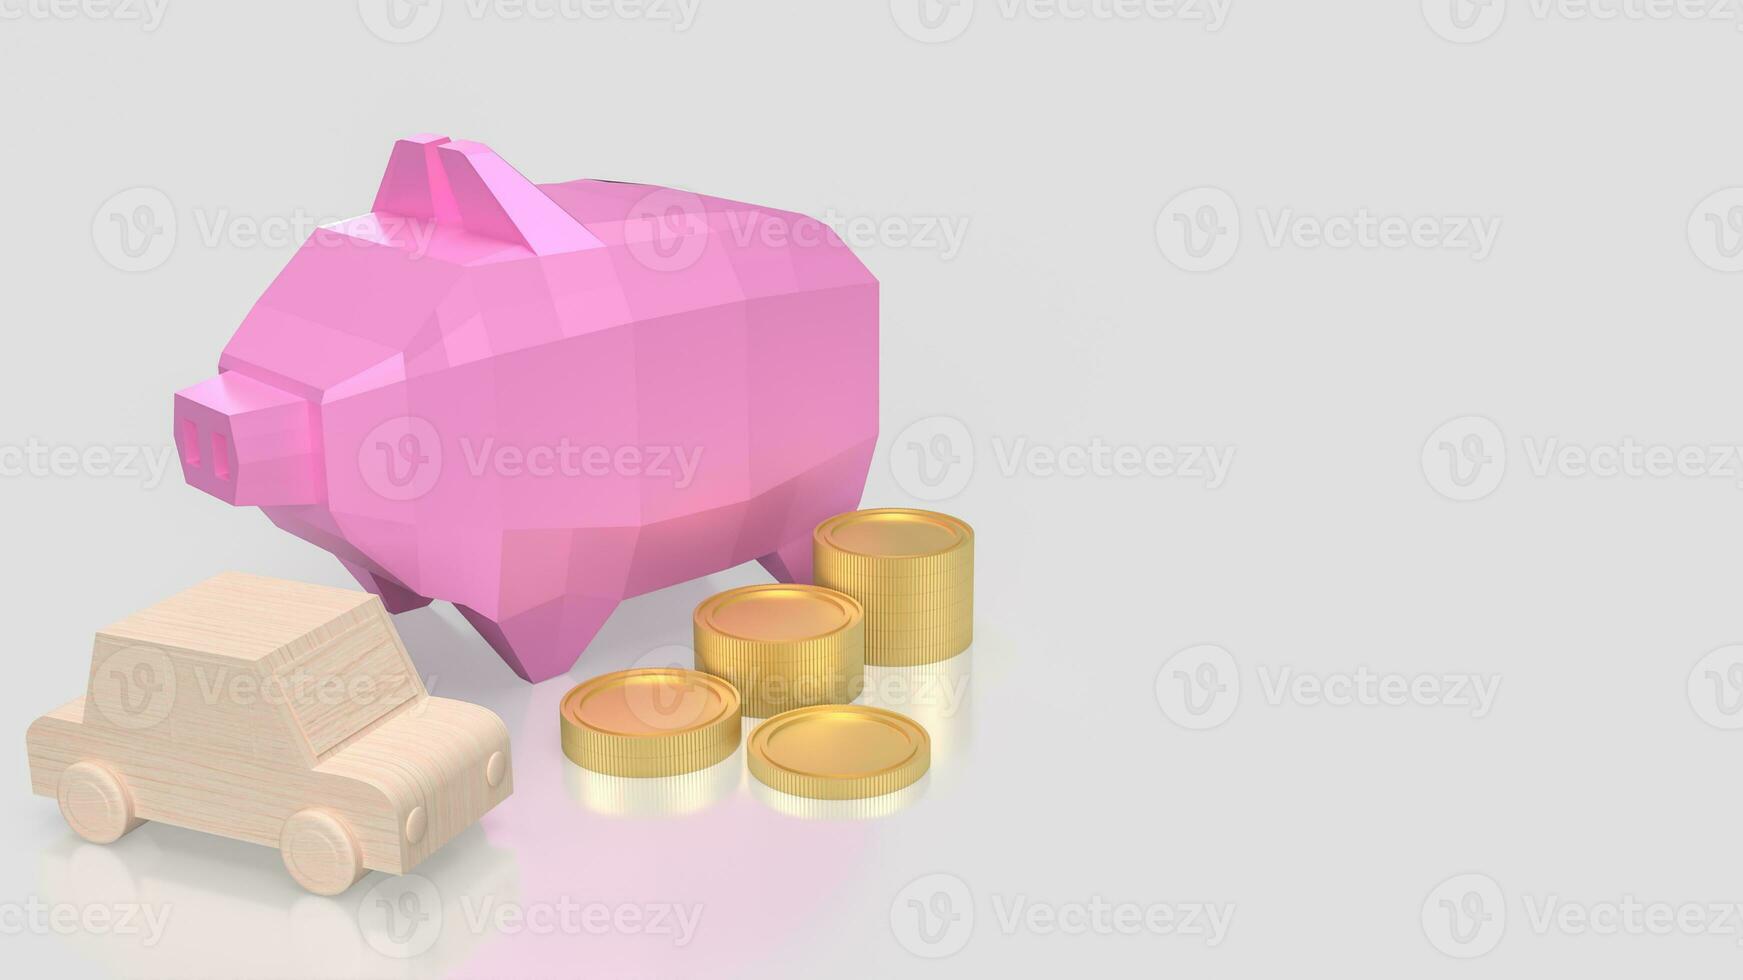 el rosado cerdito banco y oro moneda para coche ahorro concepto 3d representación foto